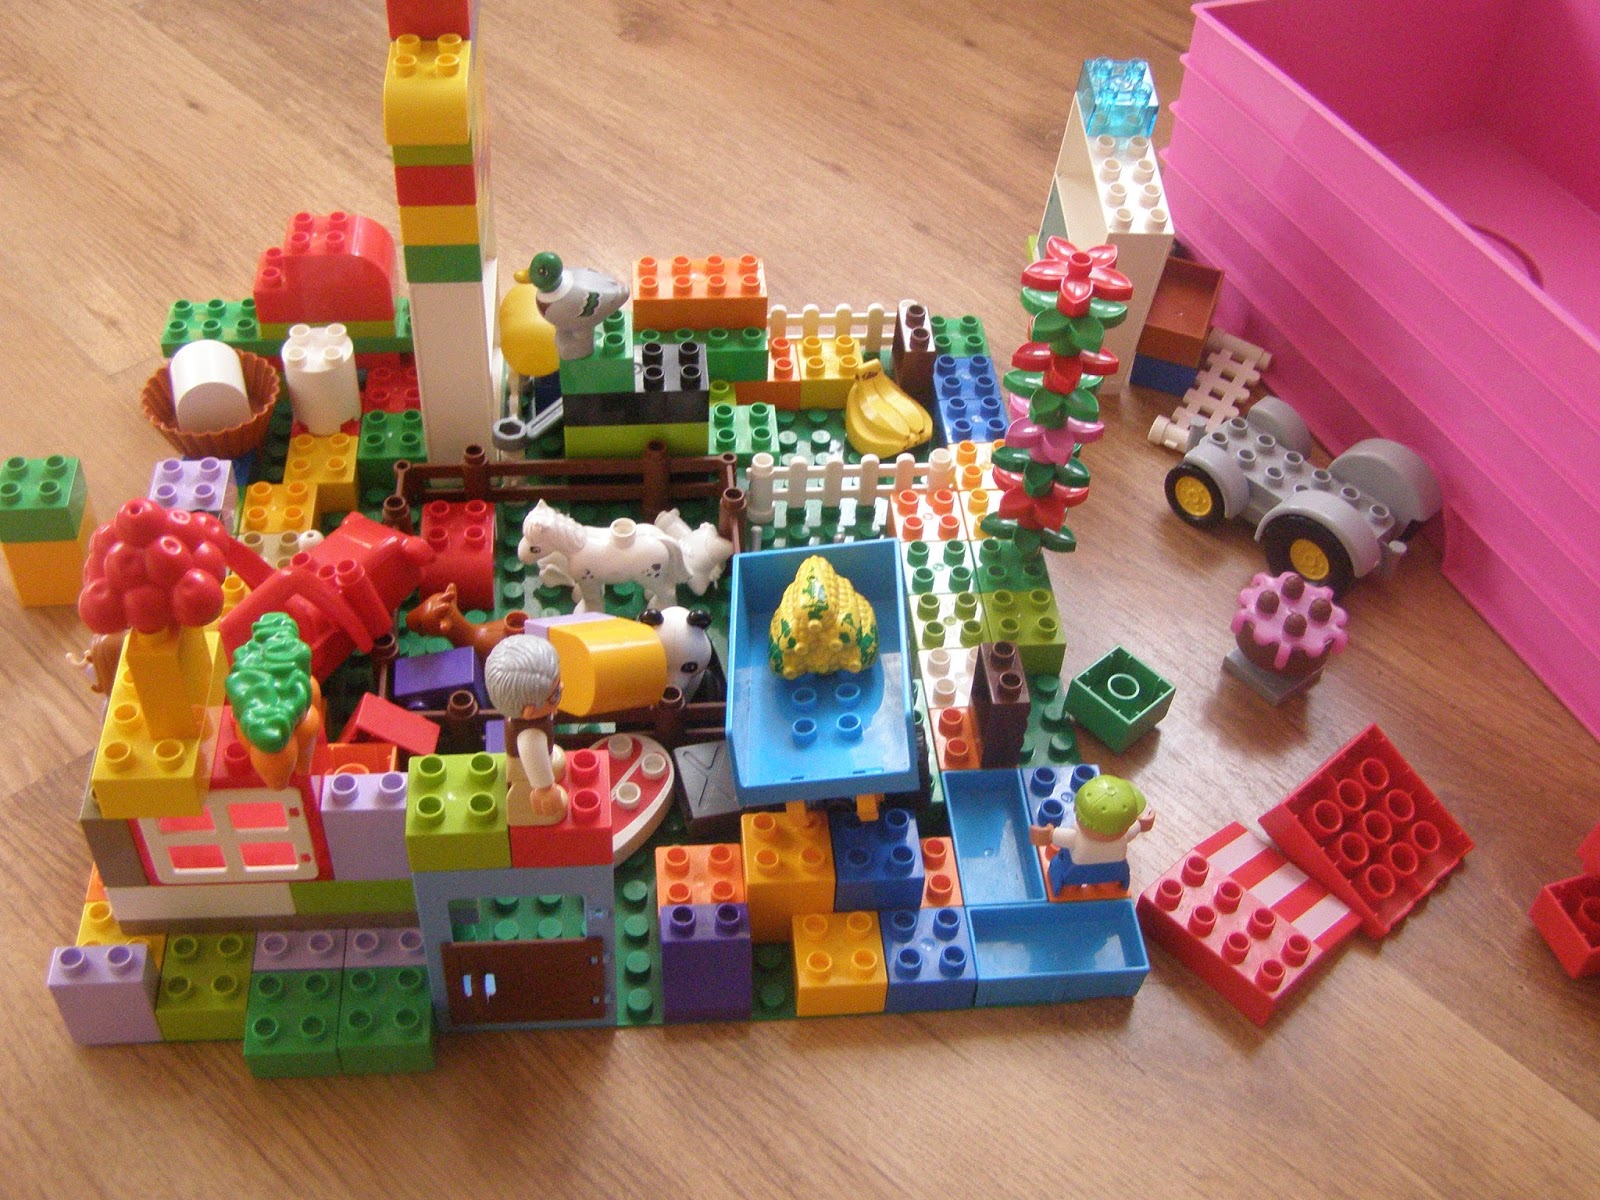 børste Næsten Slette ważne jest to co kupujesz: Lego Duplo - czy to aby na pewno dobry wybór?